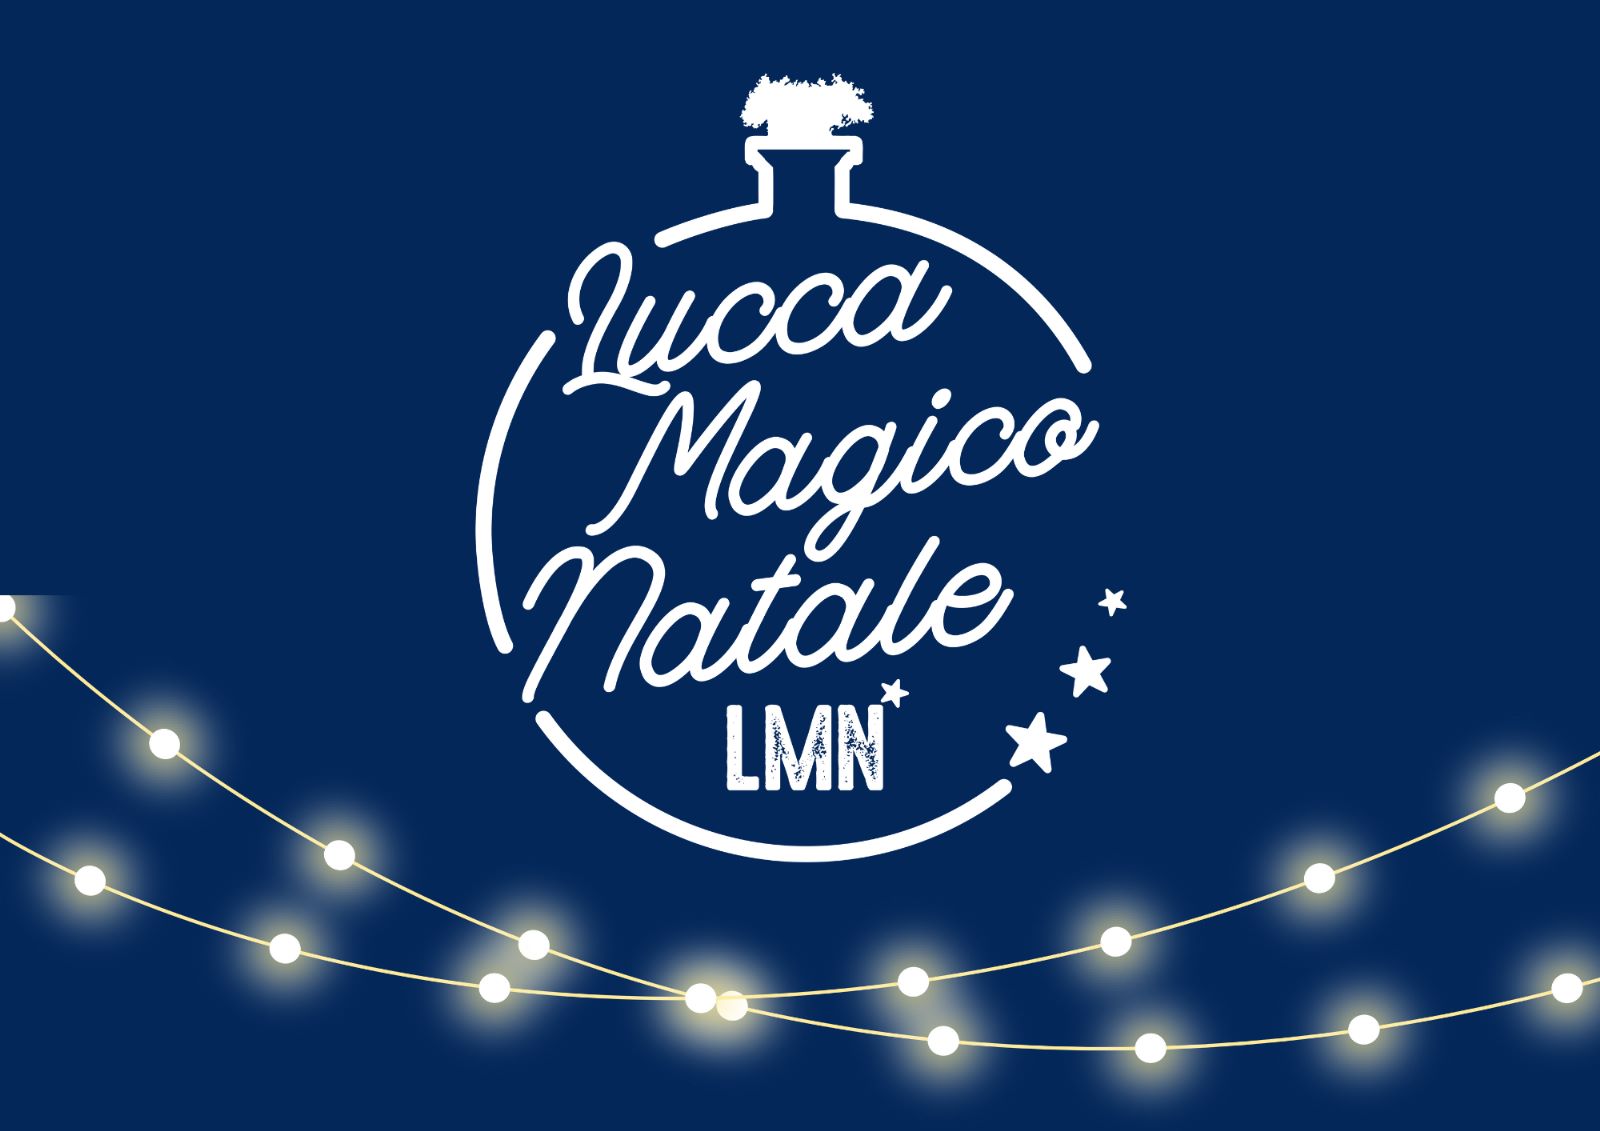 Lucca Magico Natale